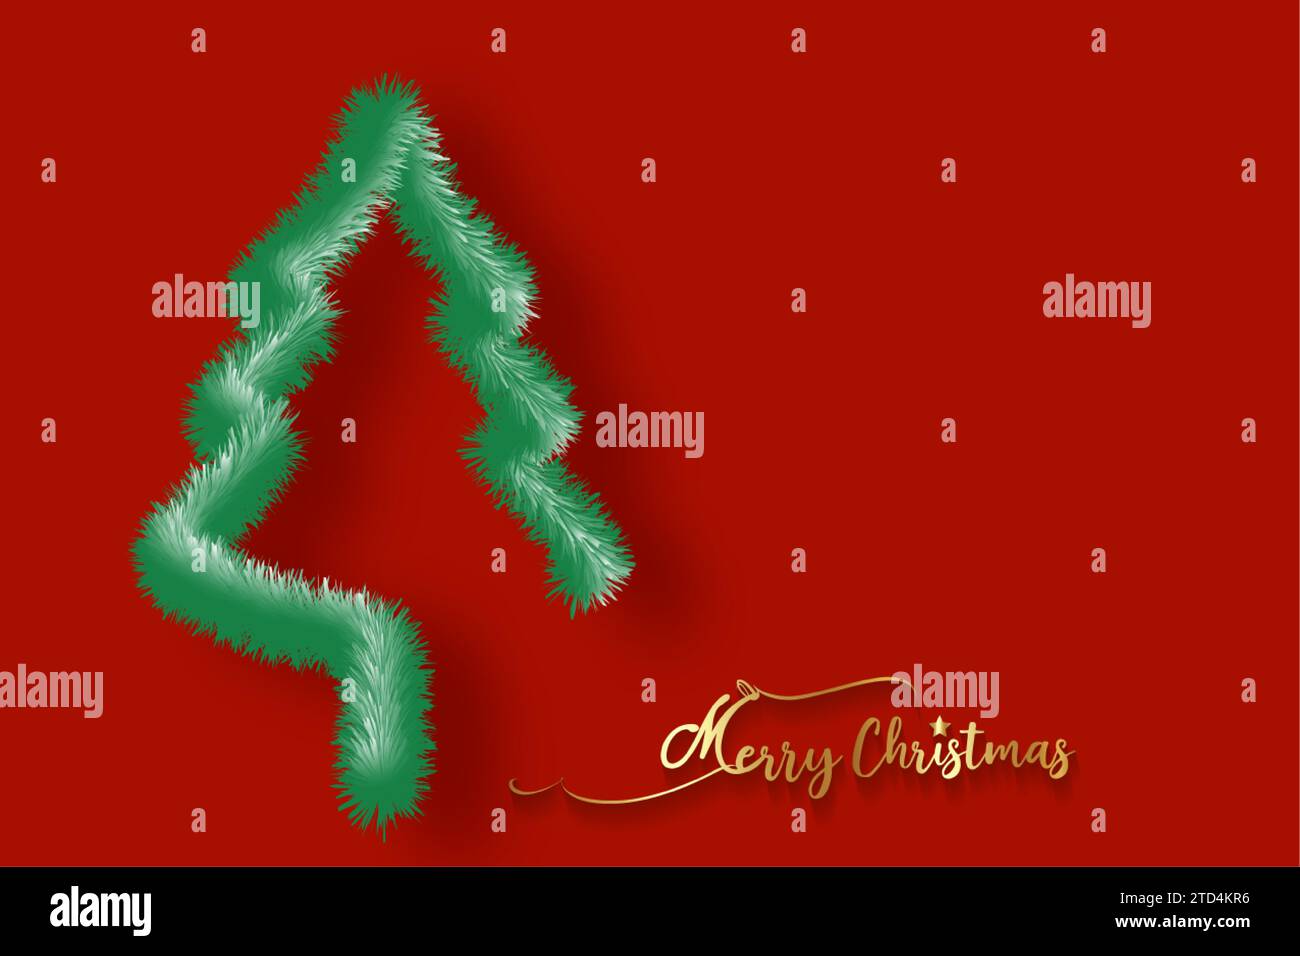 Weihnachtsbaumhintergrund und frohe Weihnachten Goldkalligraphie. Grünes Tannenbaumsymbol im Felleffekt-Stil. Rote Vorlage für Feiertage Stock Vektor